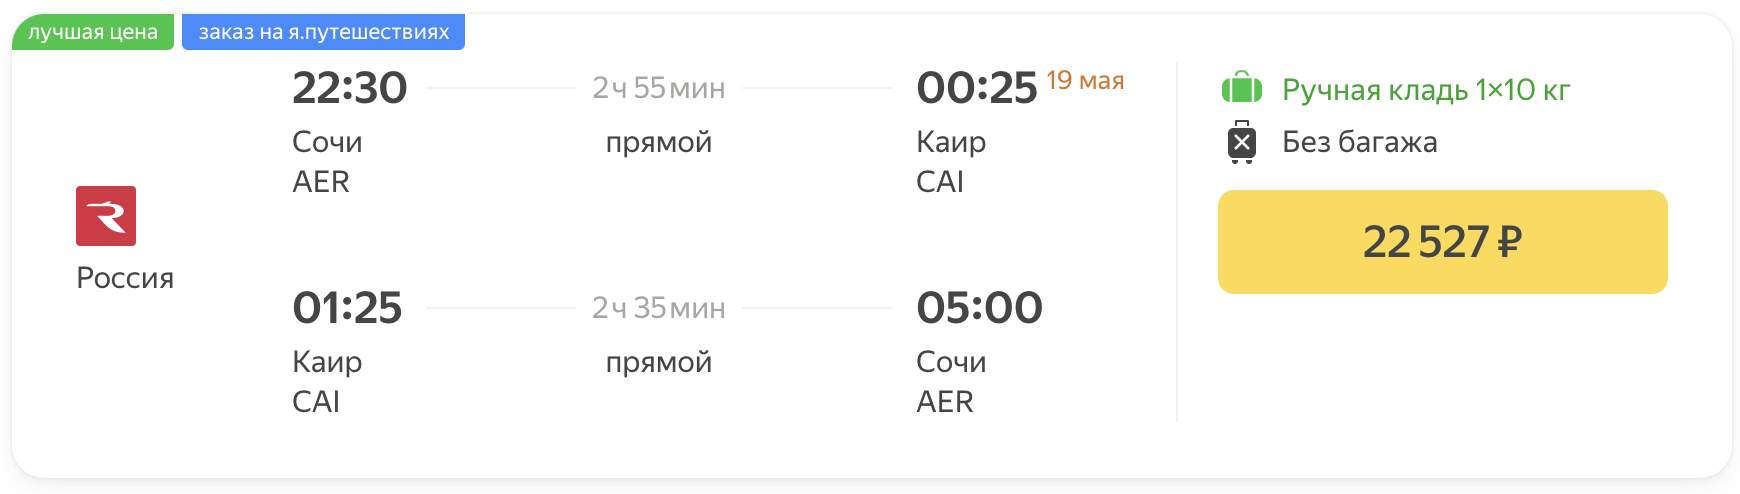 Chúng tôi bay đến Cairo từ Sochi, St. Petersburg và Moscow với giá 22500₽ / 23600₽ / 24800₽ khứ hồi